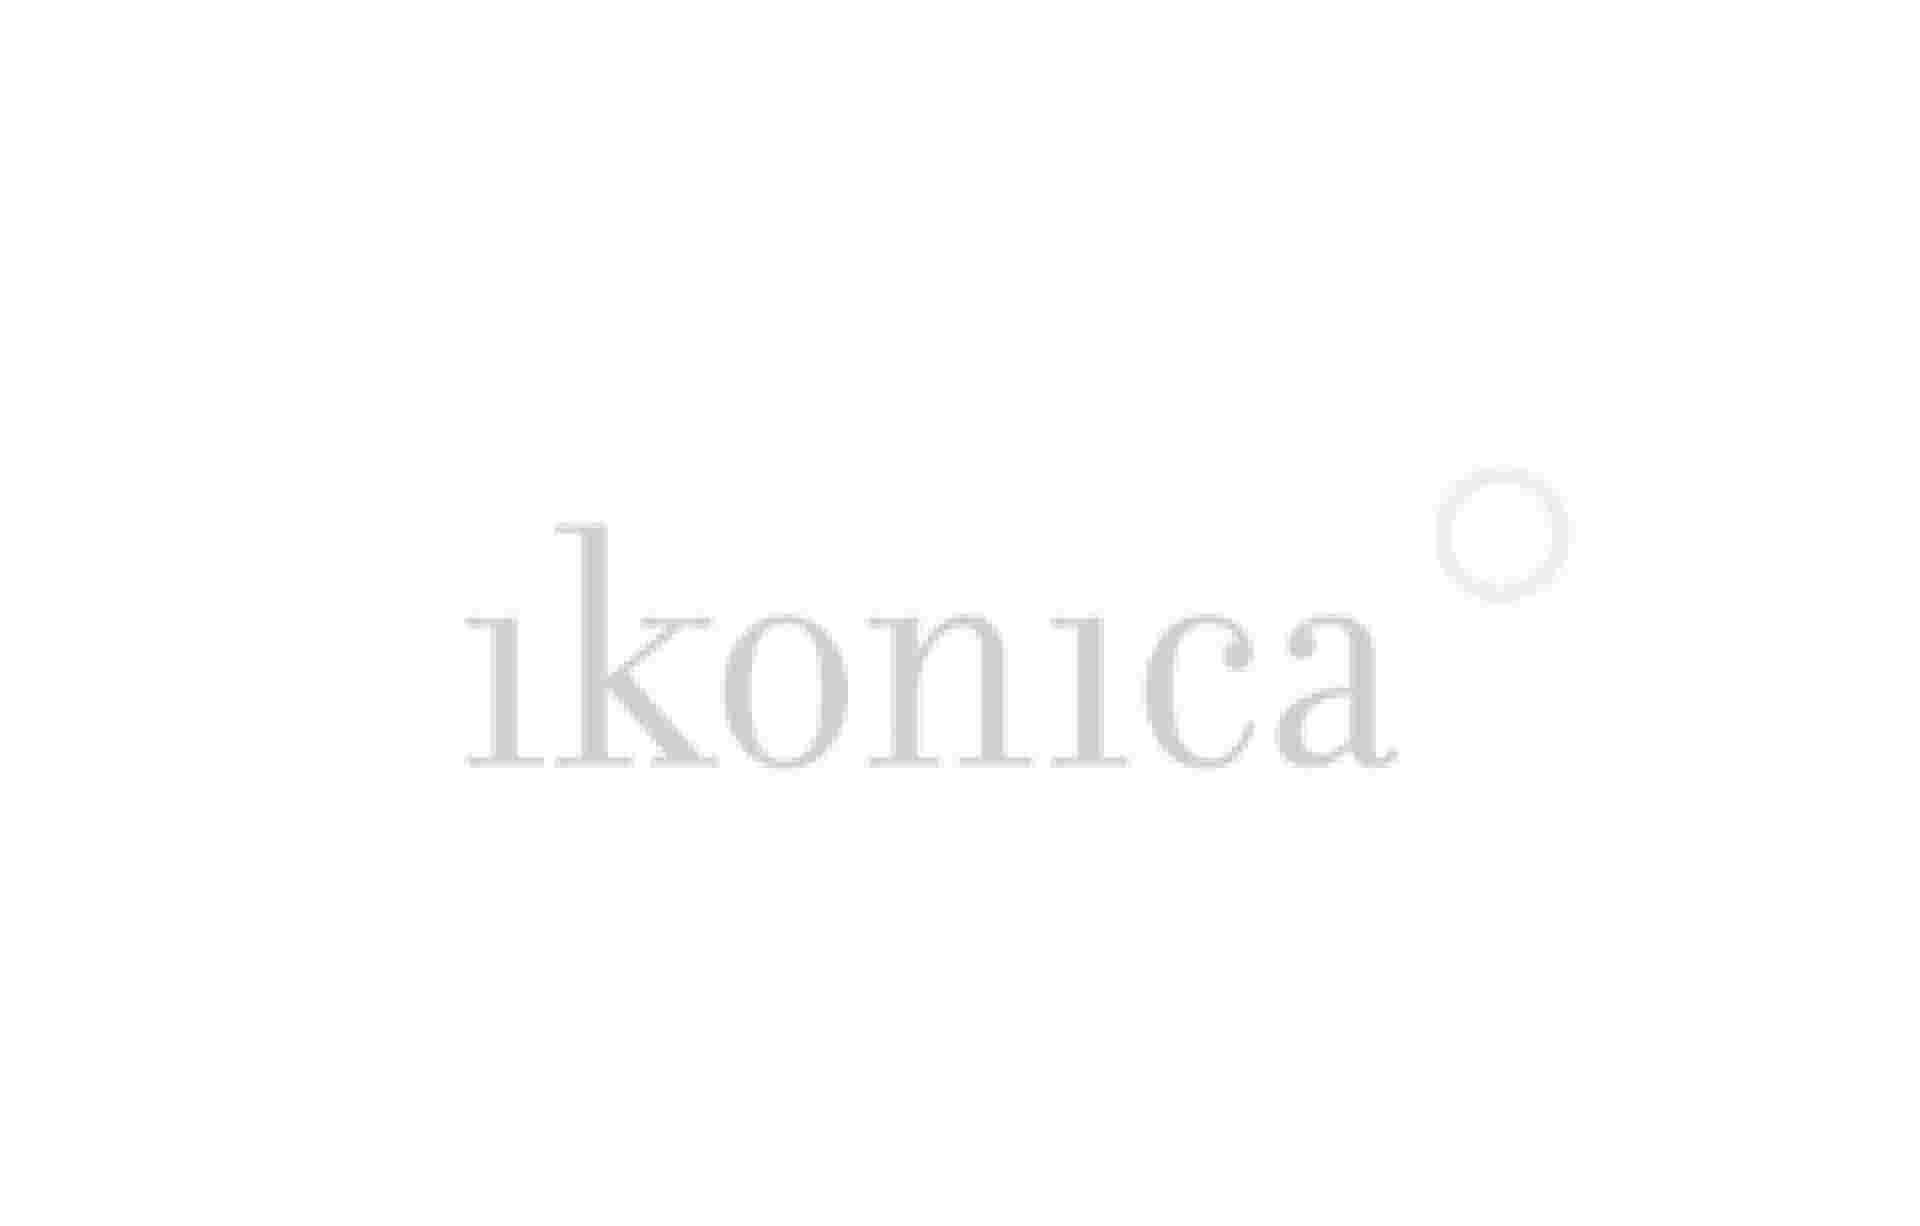 Identity / Naming - identity_ikonica_logo_2col